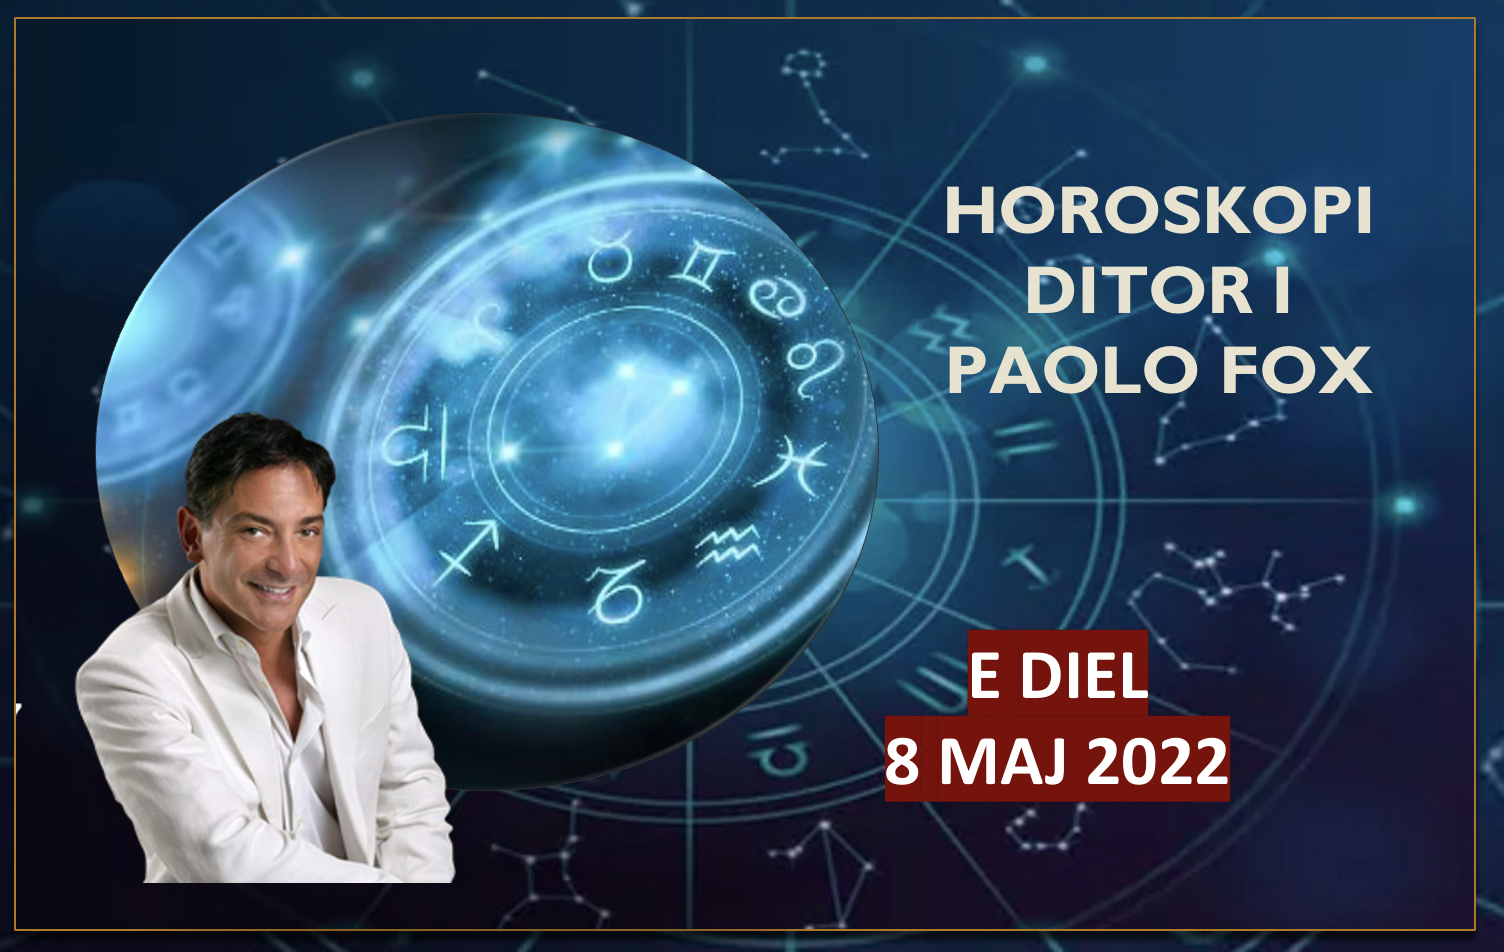 Horoskopi i Paolo Fox për ditën e diel, 8 maj 2022